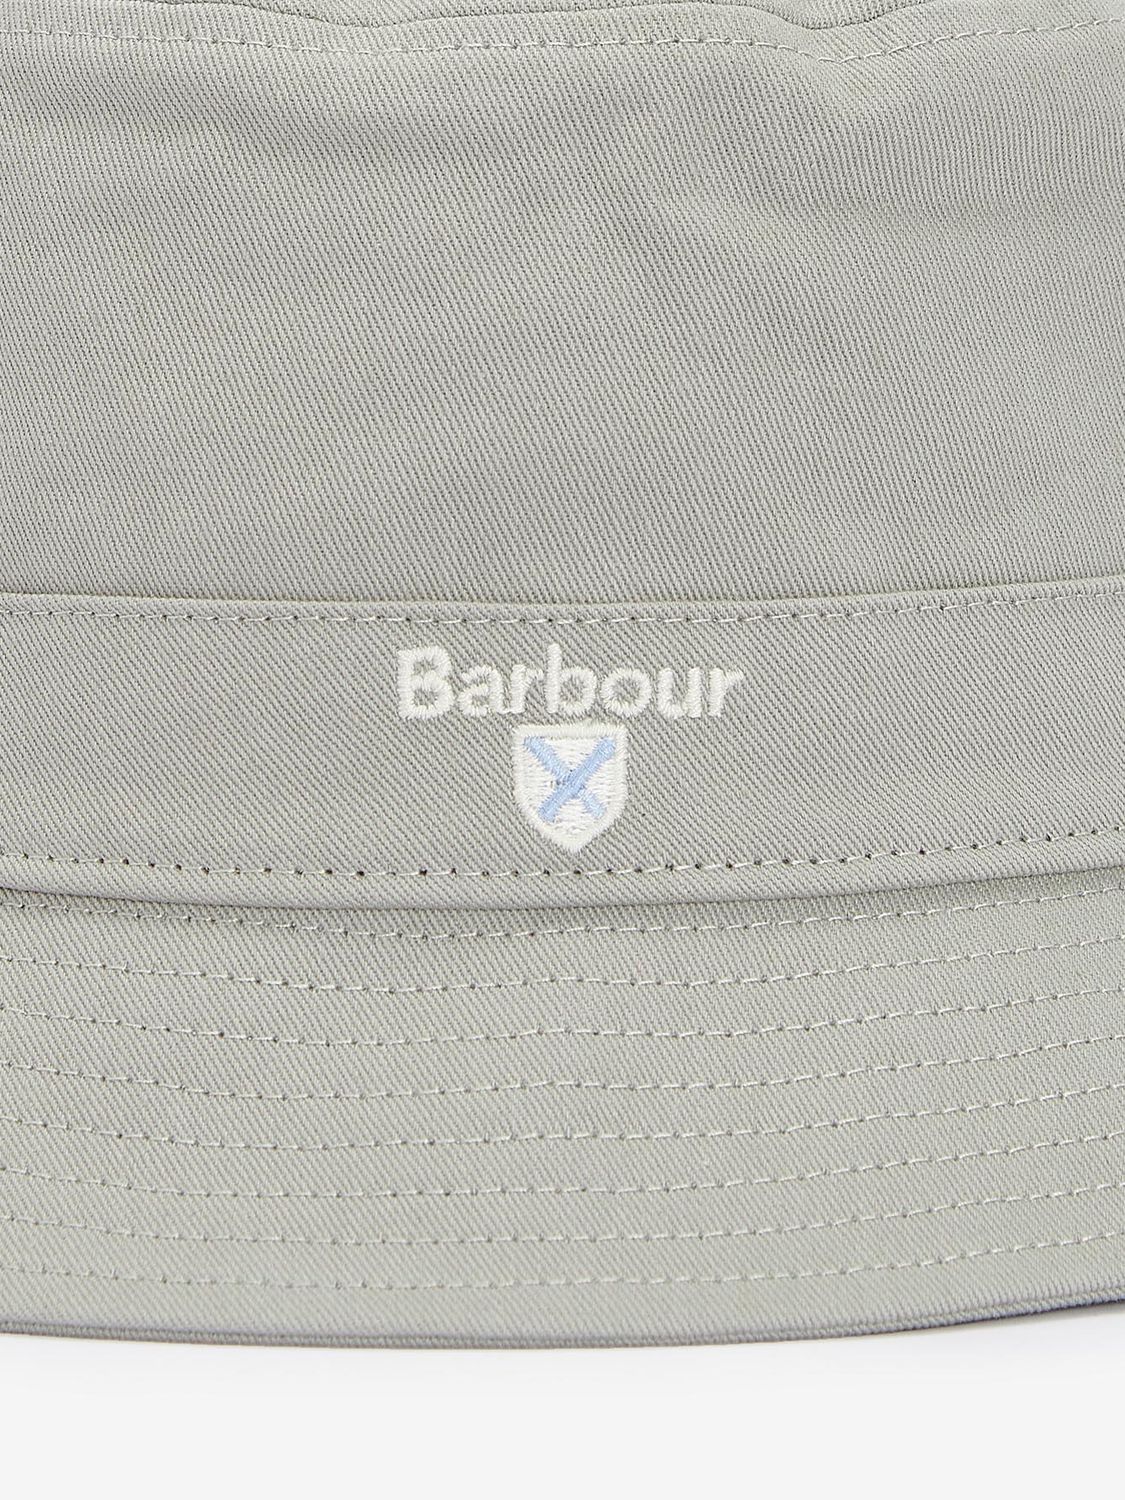 Barbour Classic Bucket Hat, Green, S